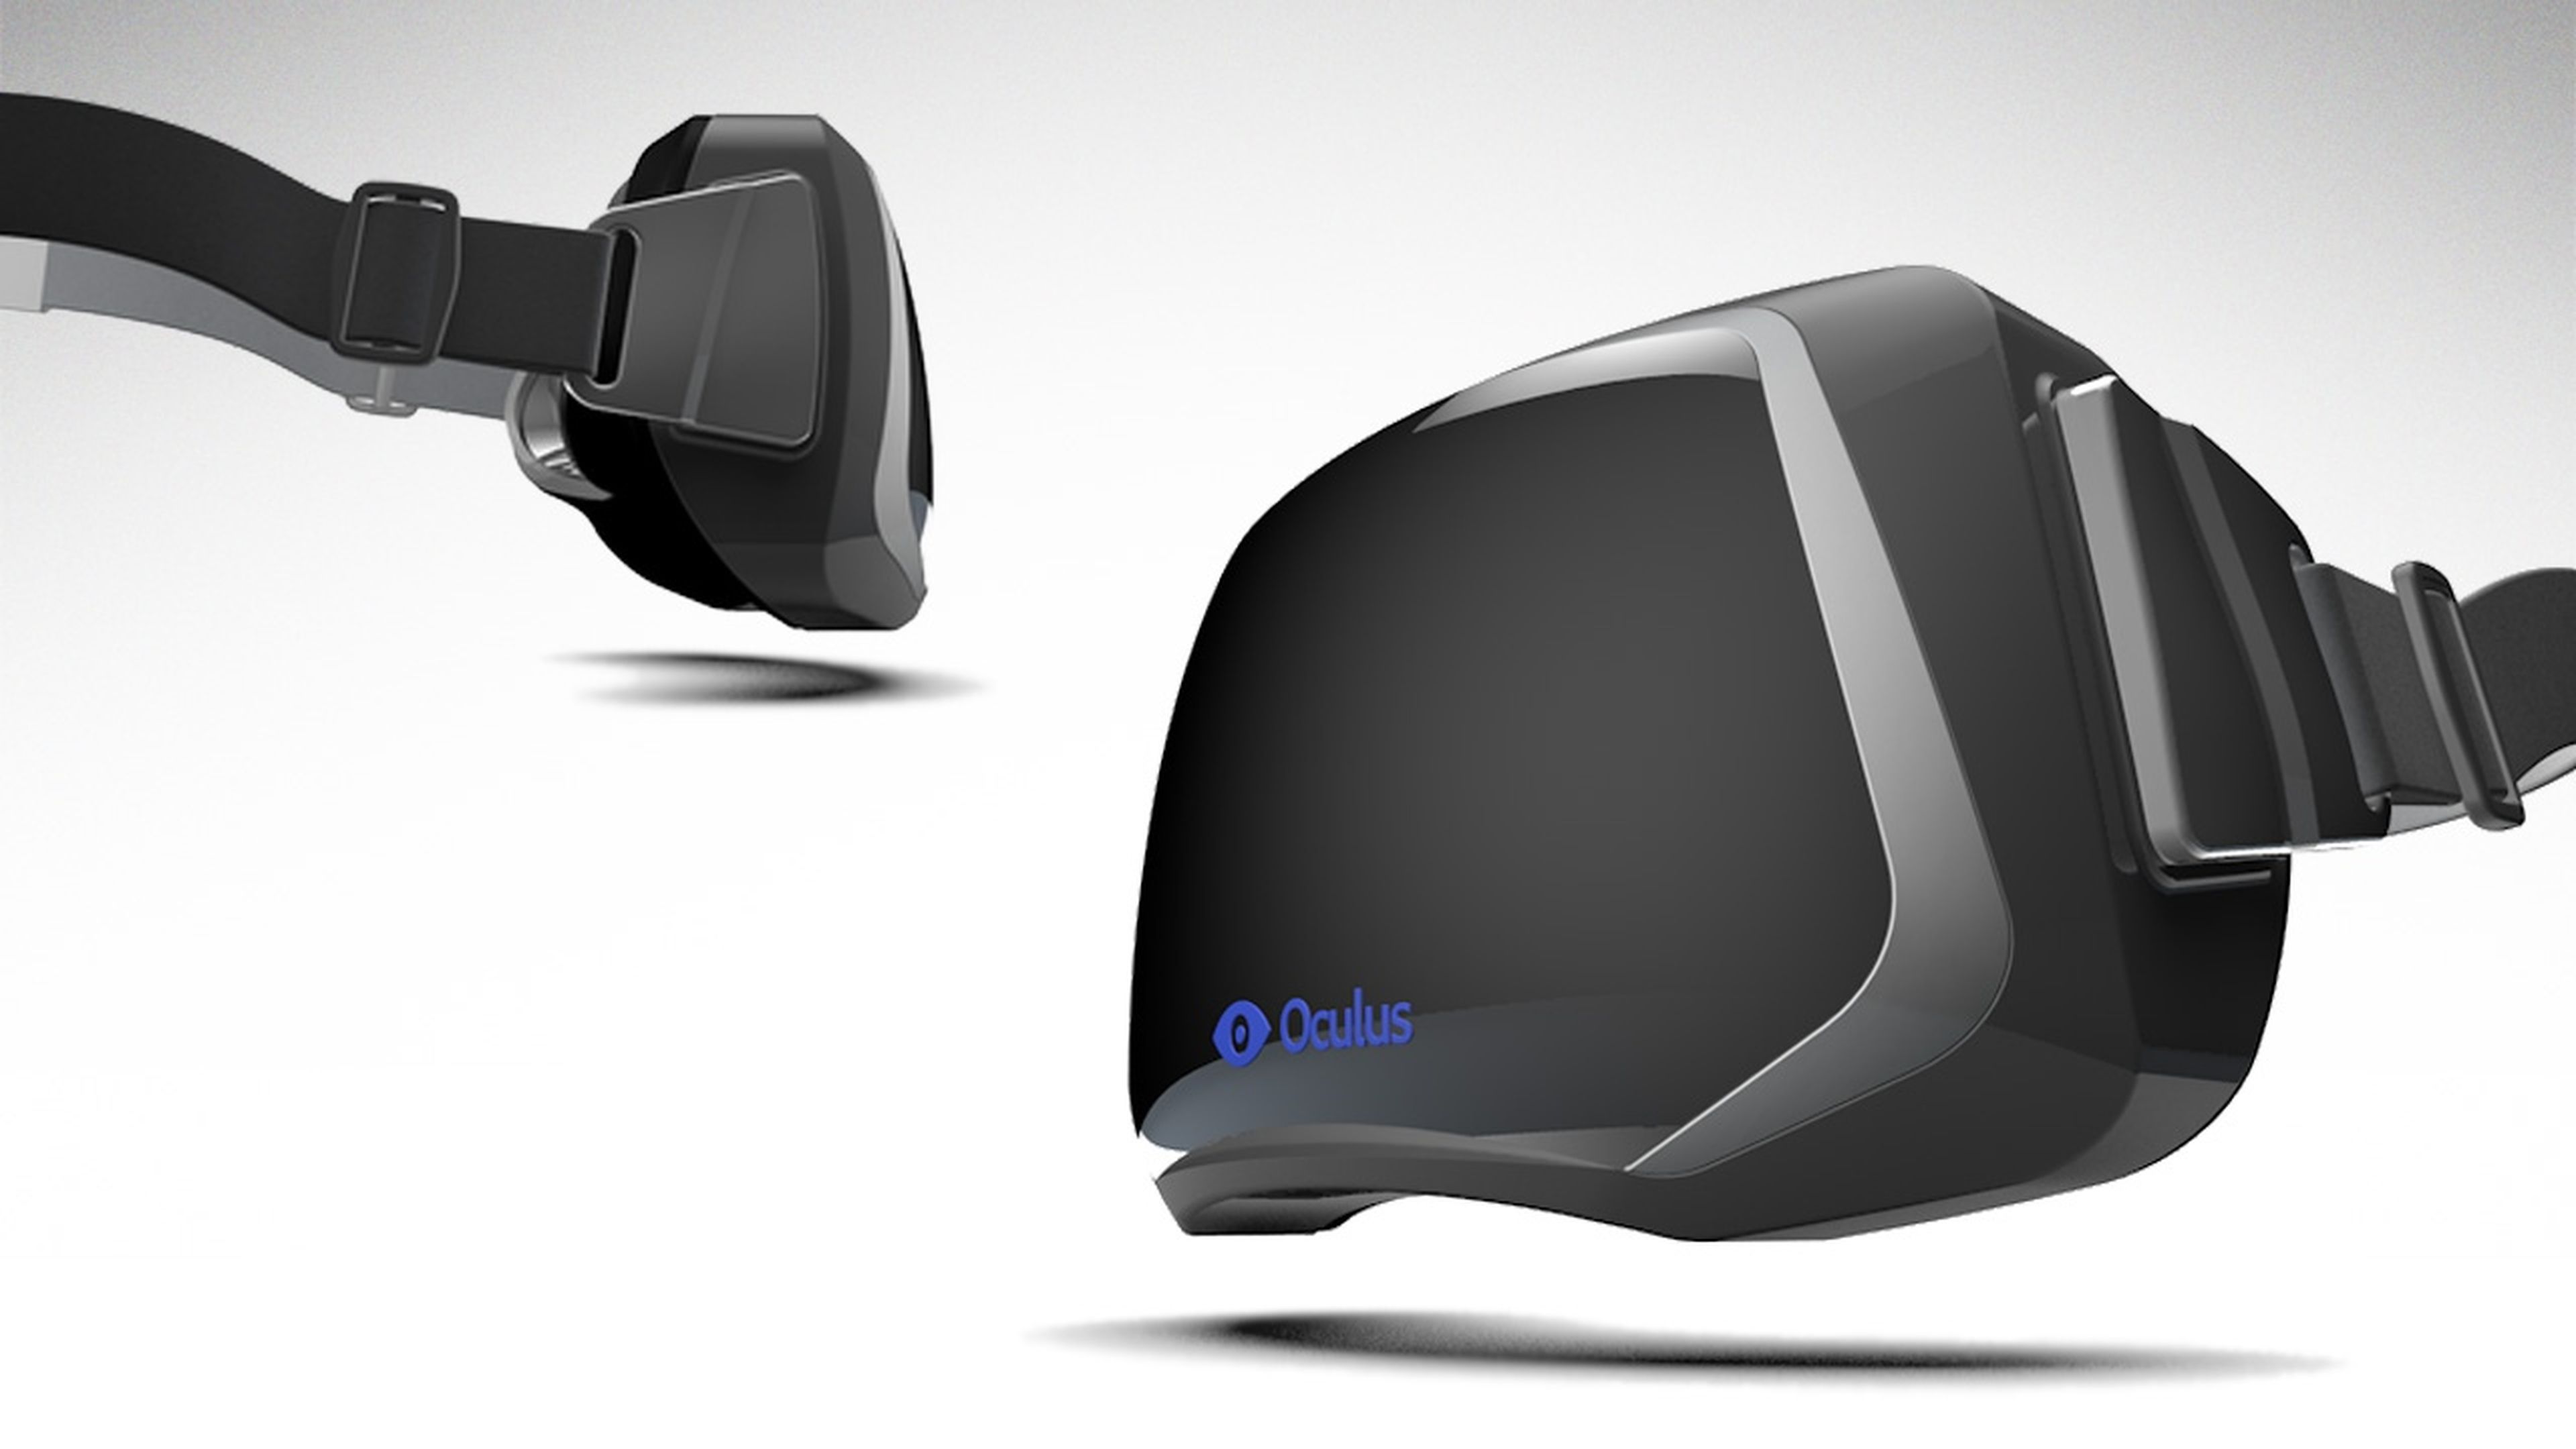 Oculus Rift son unas gafas de realidad virtual financiadas a través del crowdfunding